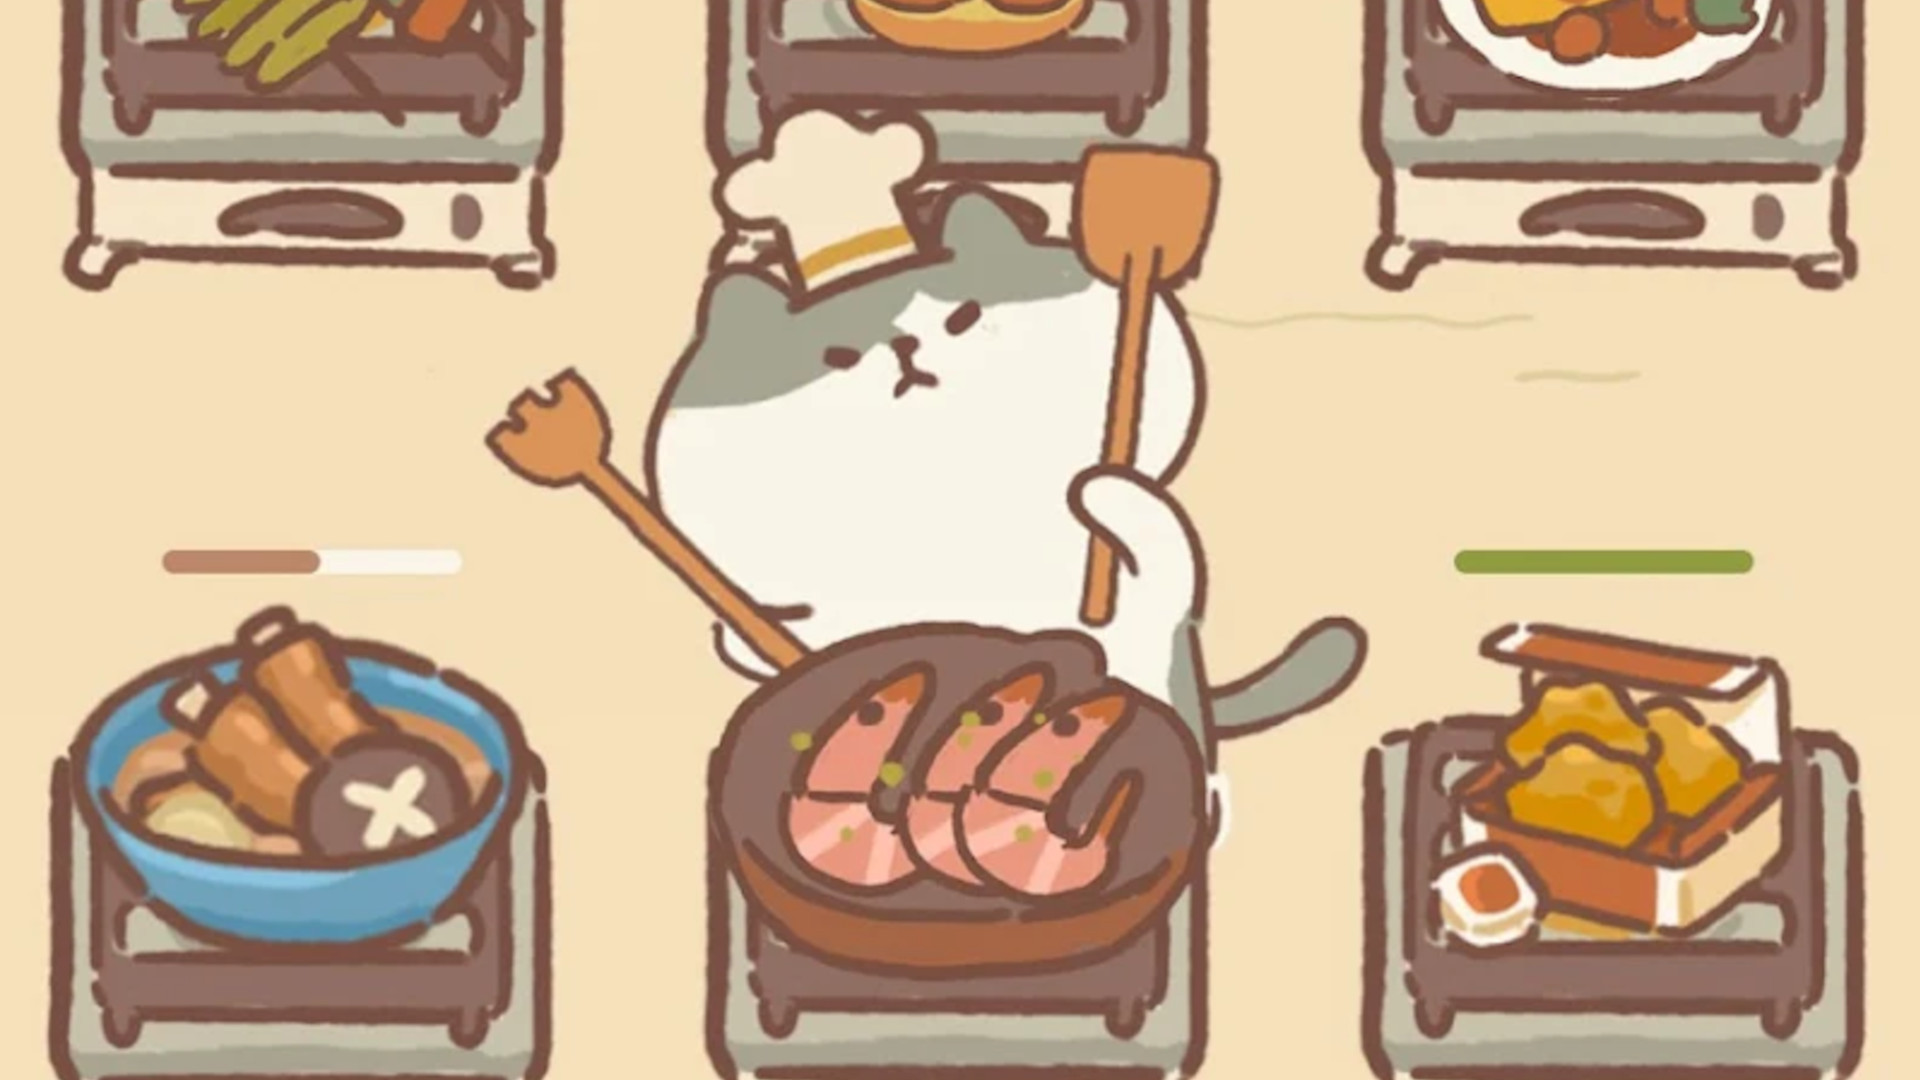 Matlagningsspel: En grå och vit katt som steker några räkor i ett sött tecknat kök.